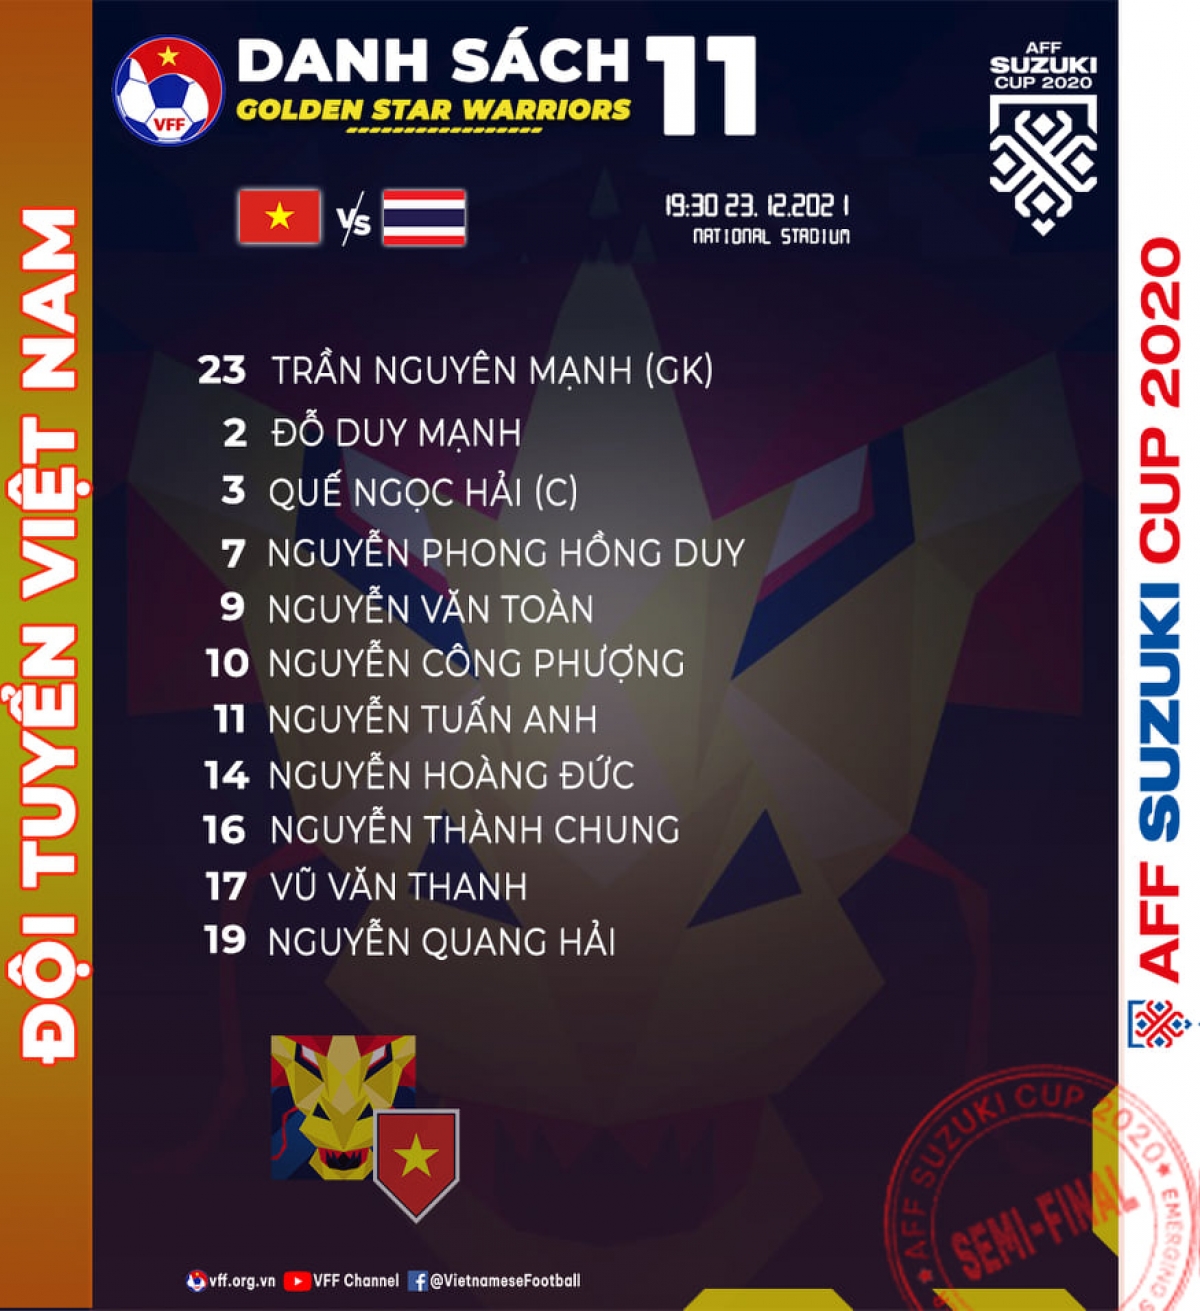 Đội hình xuất phát của ĐTVN ở trận bán kết lượt đi với tuyển Thái Lan